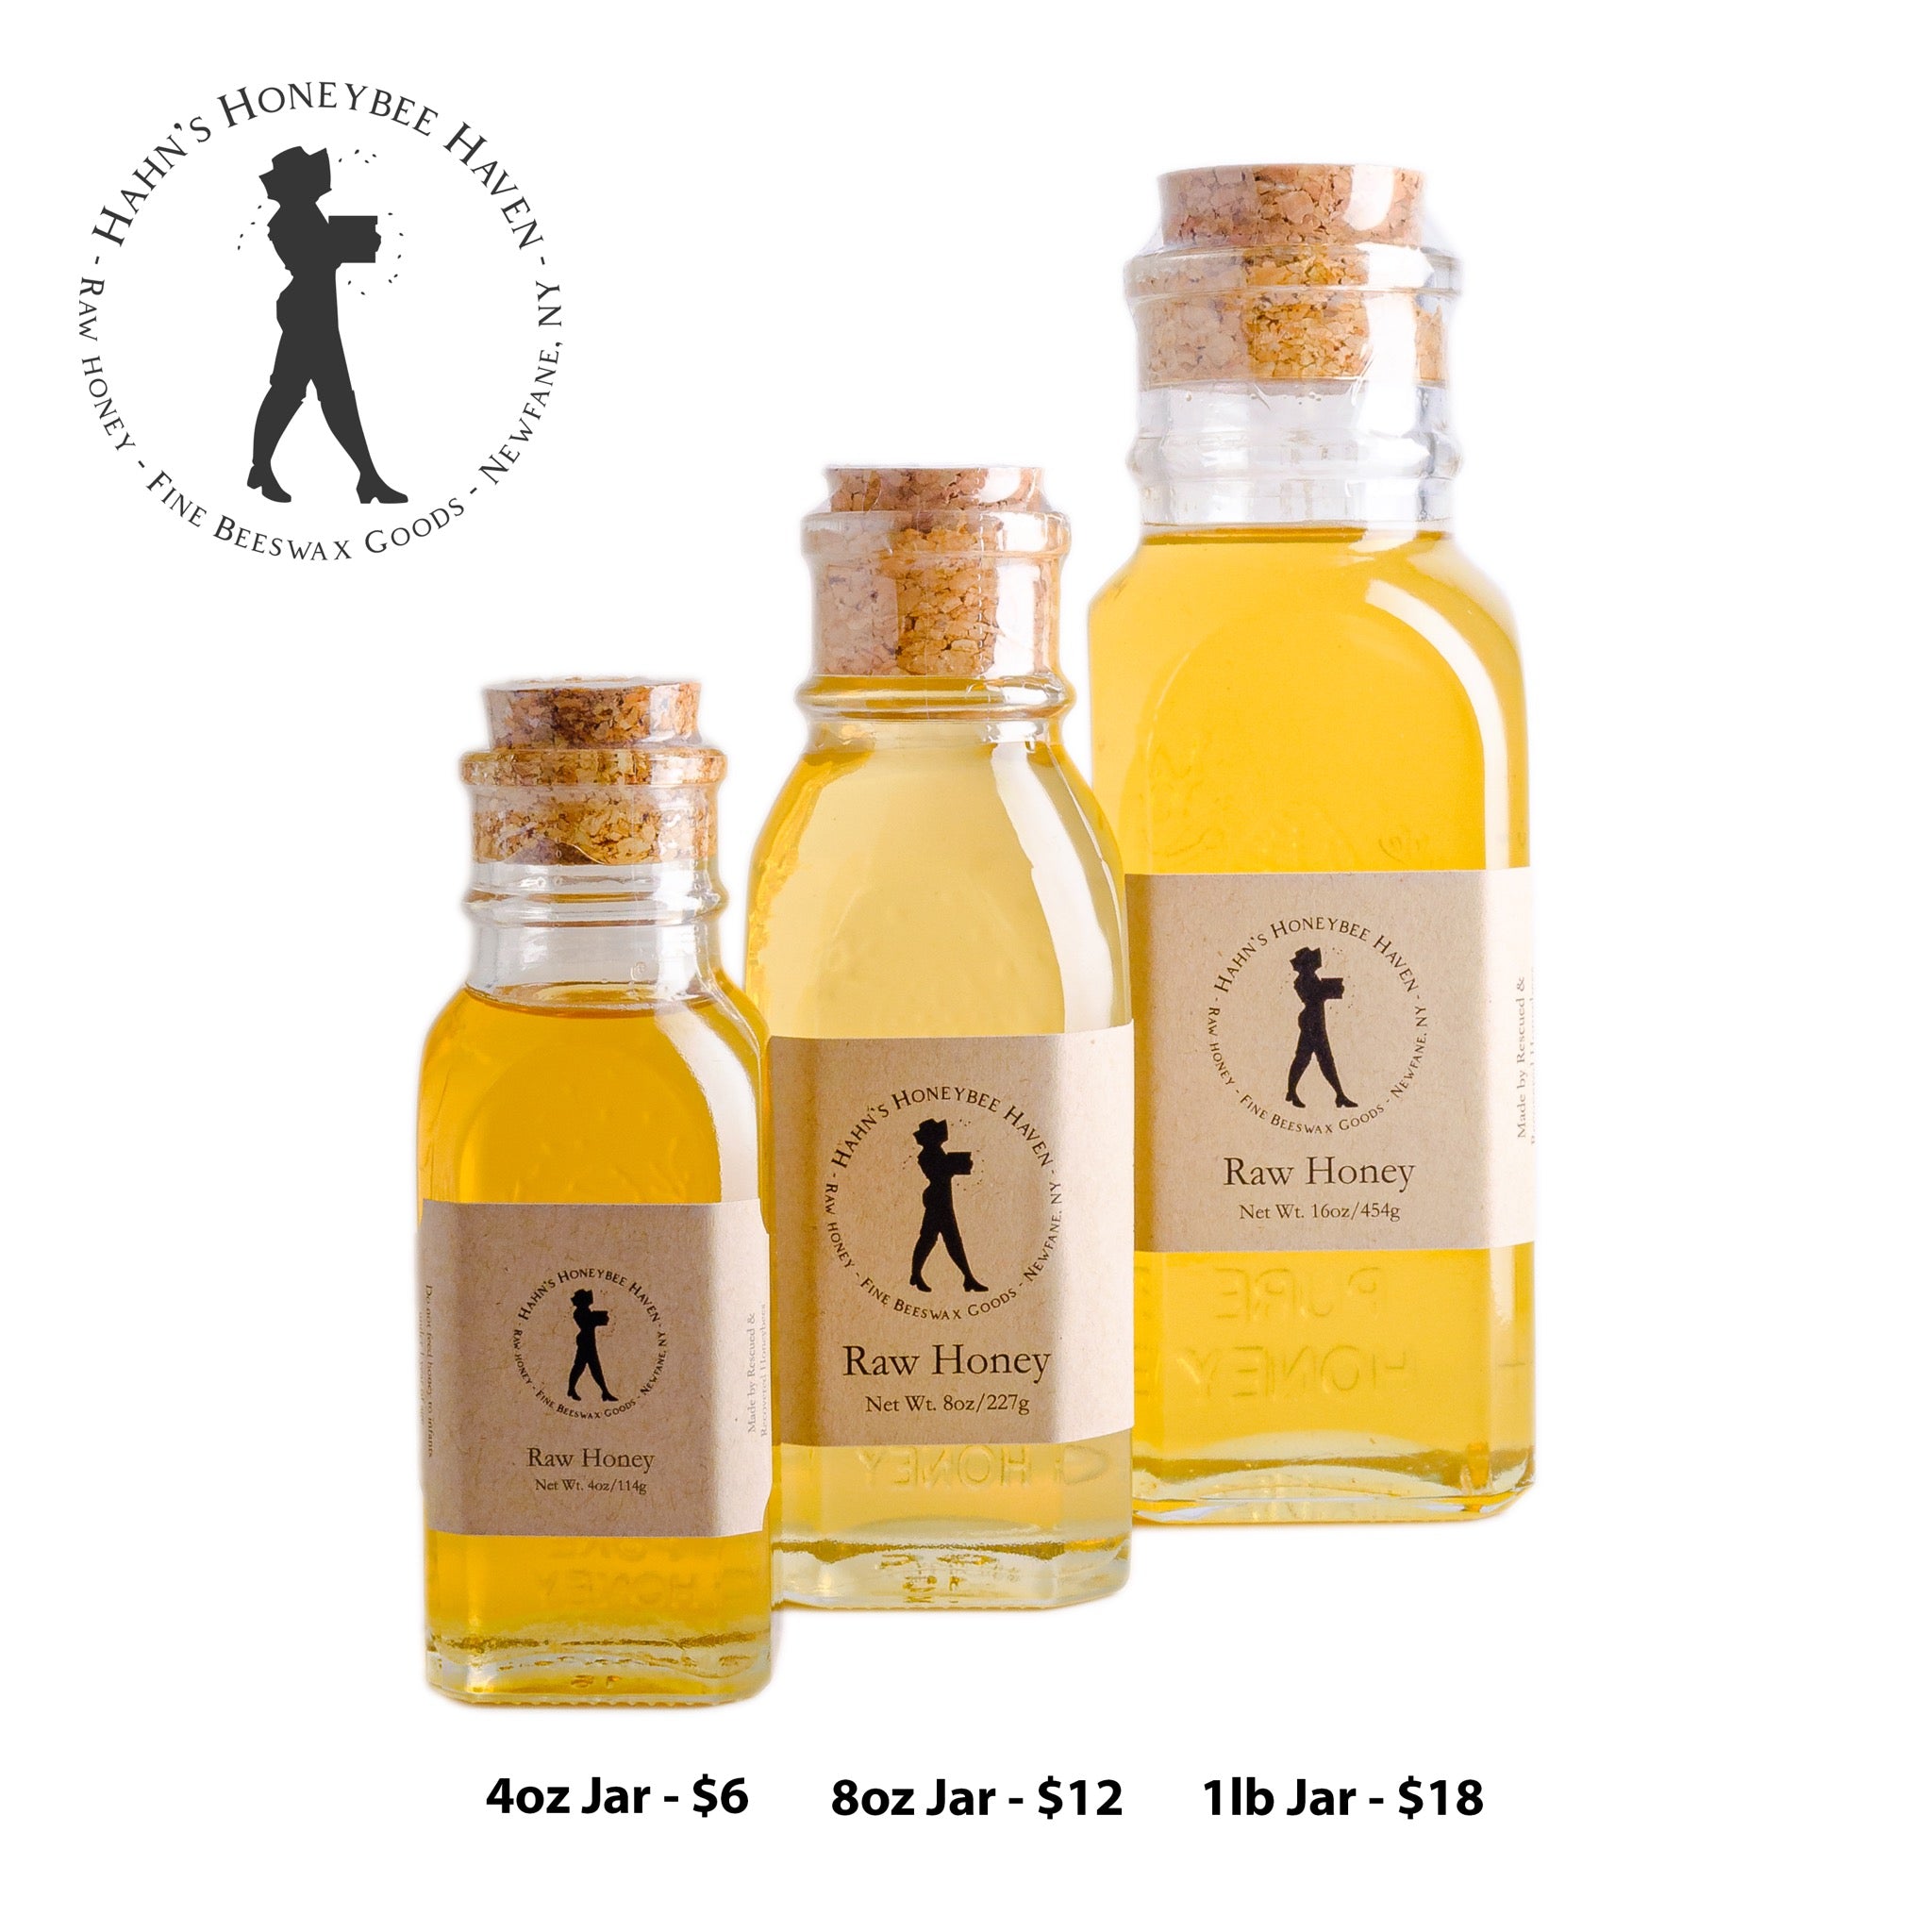 Pure Beeswax – Sunny Honey Company